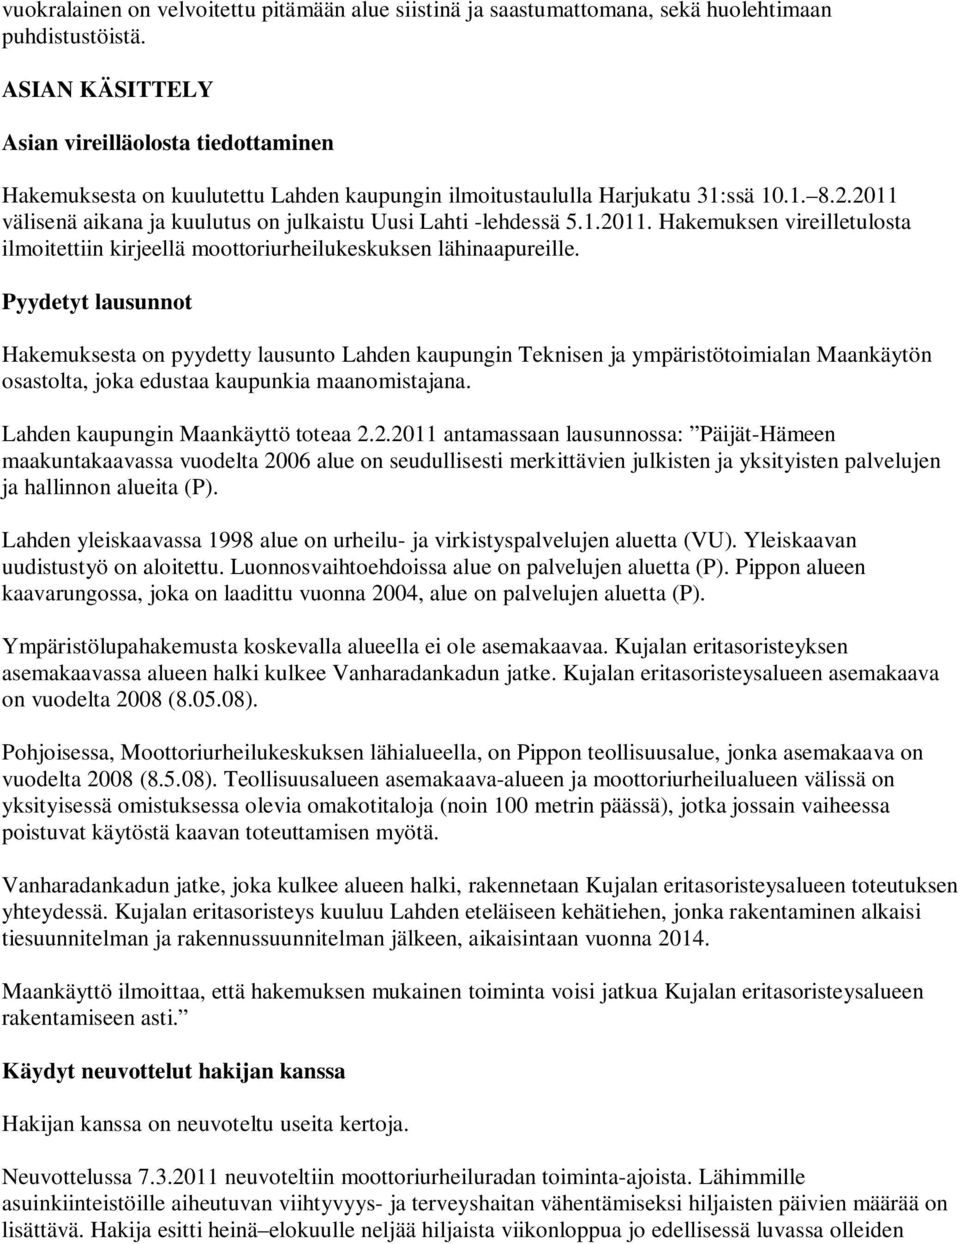 2011 välisenä aikana ja kuulutus on julkaistu Uusi Lahti -lehdessä 5.1.2011. Hakemuksen vireilletulosta ilmoitettiin kirjeellä moottoriurheilukeskuksen lähinaapureille.